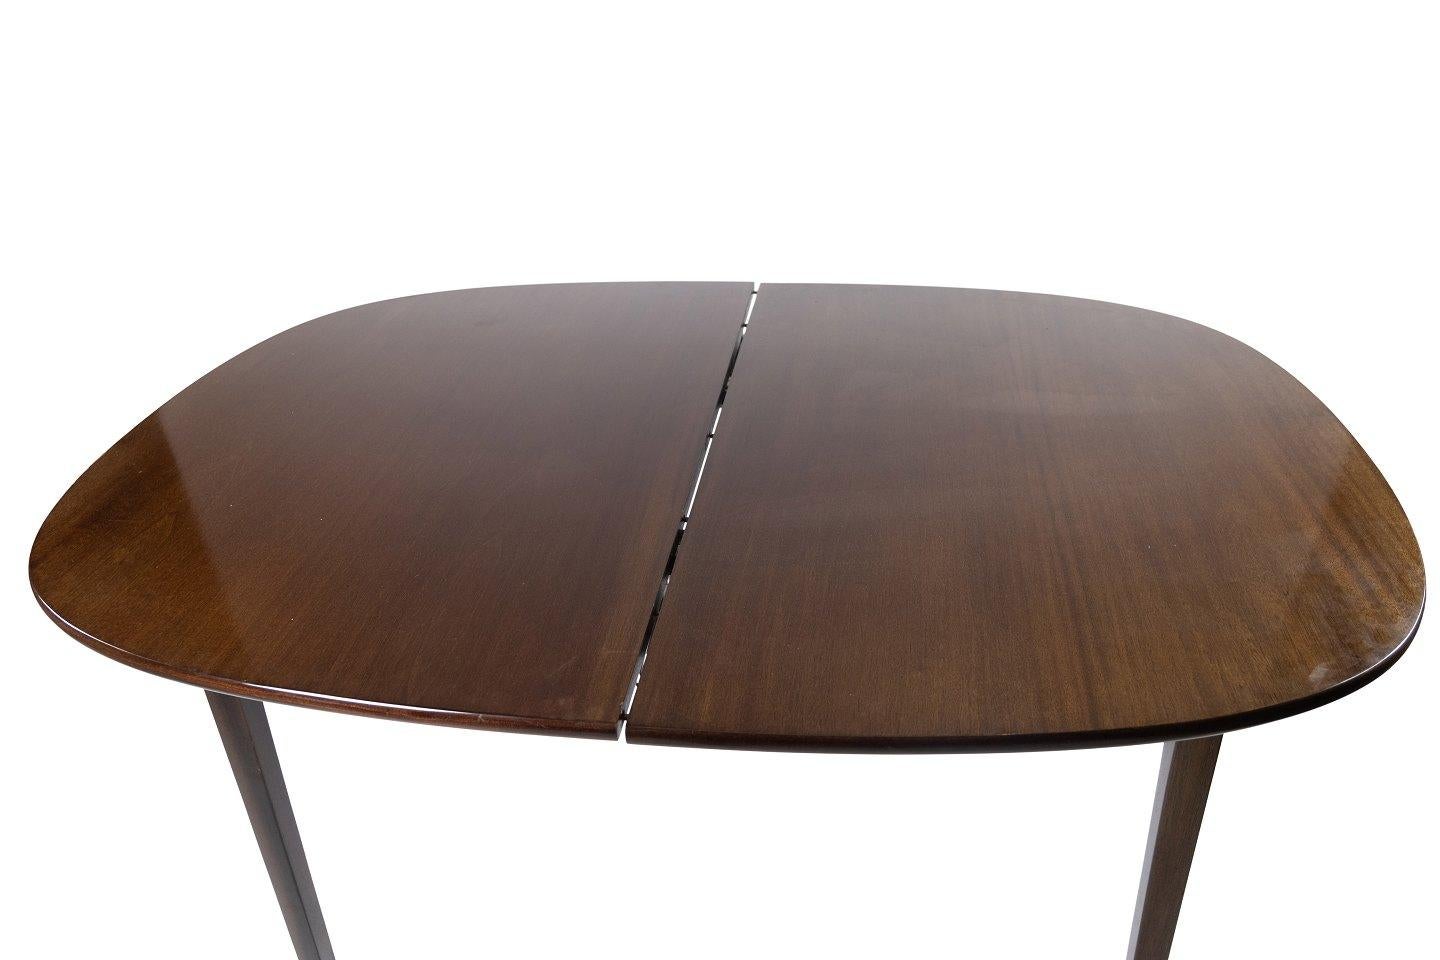 Rungstedlund Esstisch aus Mahagoni, entworfen von Ole Wanscher und hergestellt von P. Jeppesen in den 1960er Jahren. Der Tisch ist in hervorragendem Vintage-Zustand und mit zwei Erweiterungsplatten ausgestattet.
 